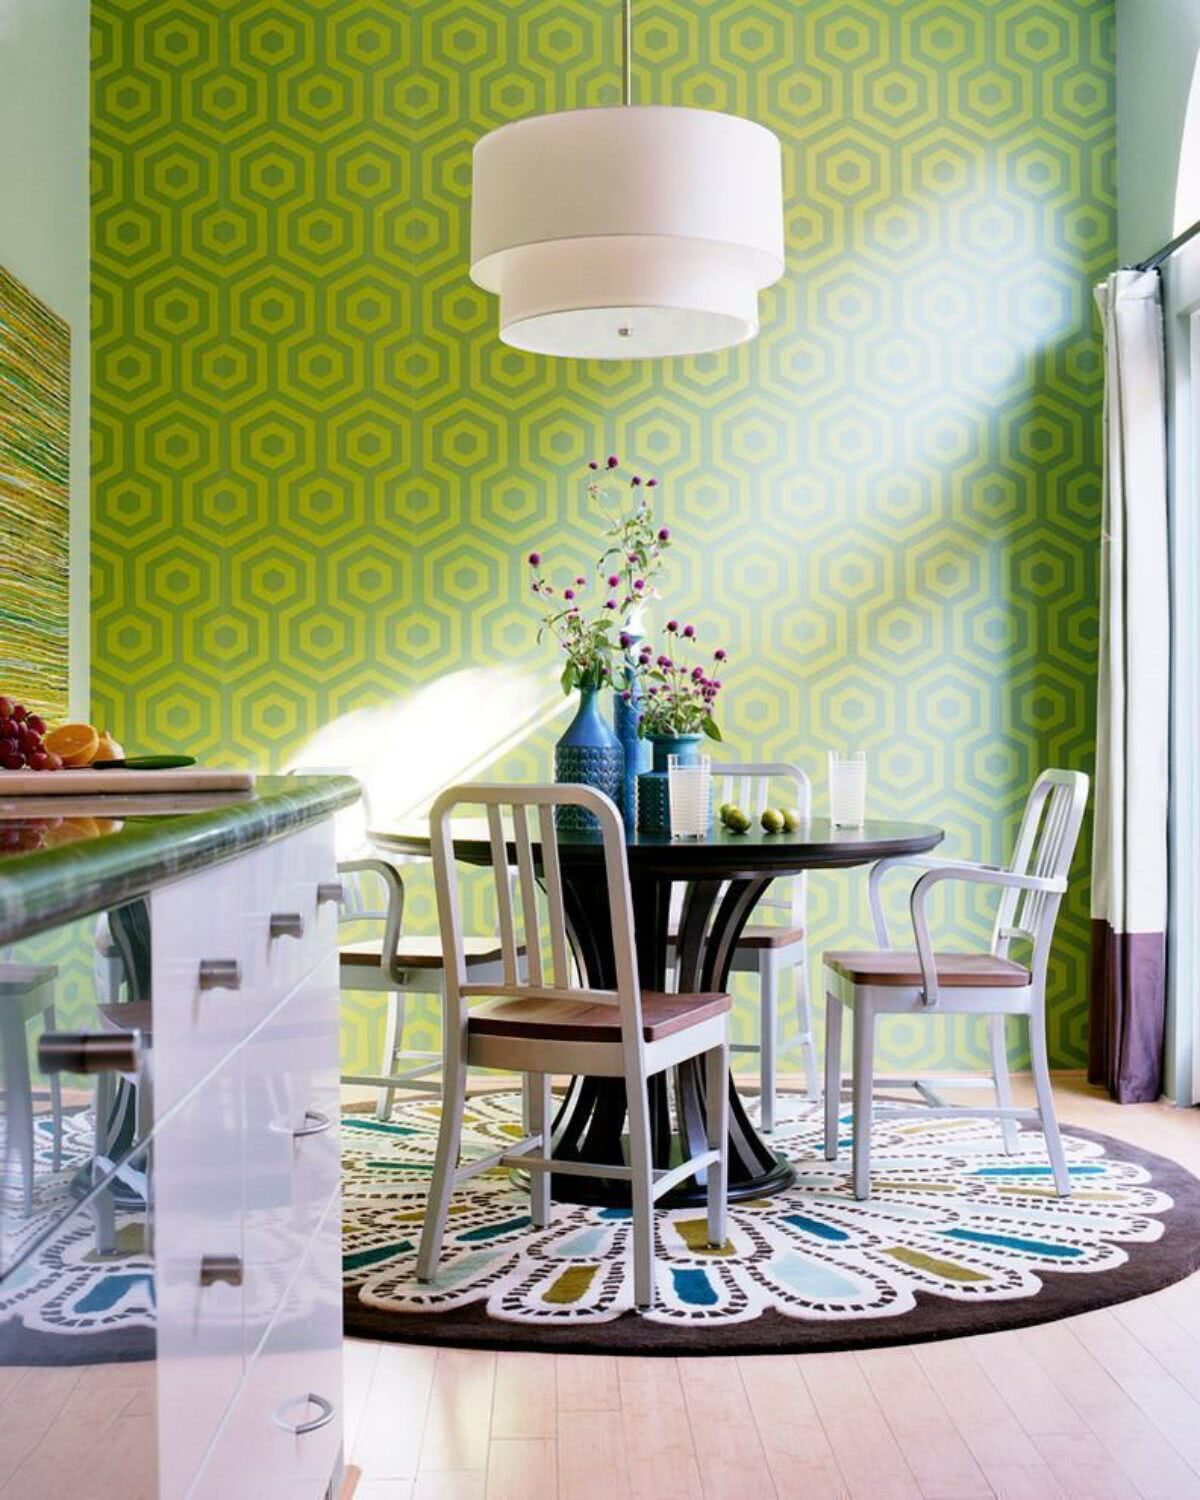 Bức tường họa tiết hình lục giác kết hợp hai tông màu xanh lá cây và xanh ô liu tạo nên sự sống động cho khu vực ăn uống.